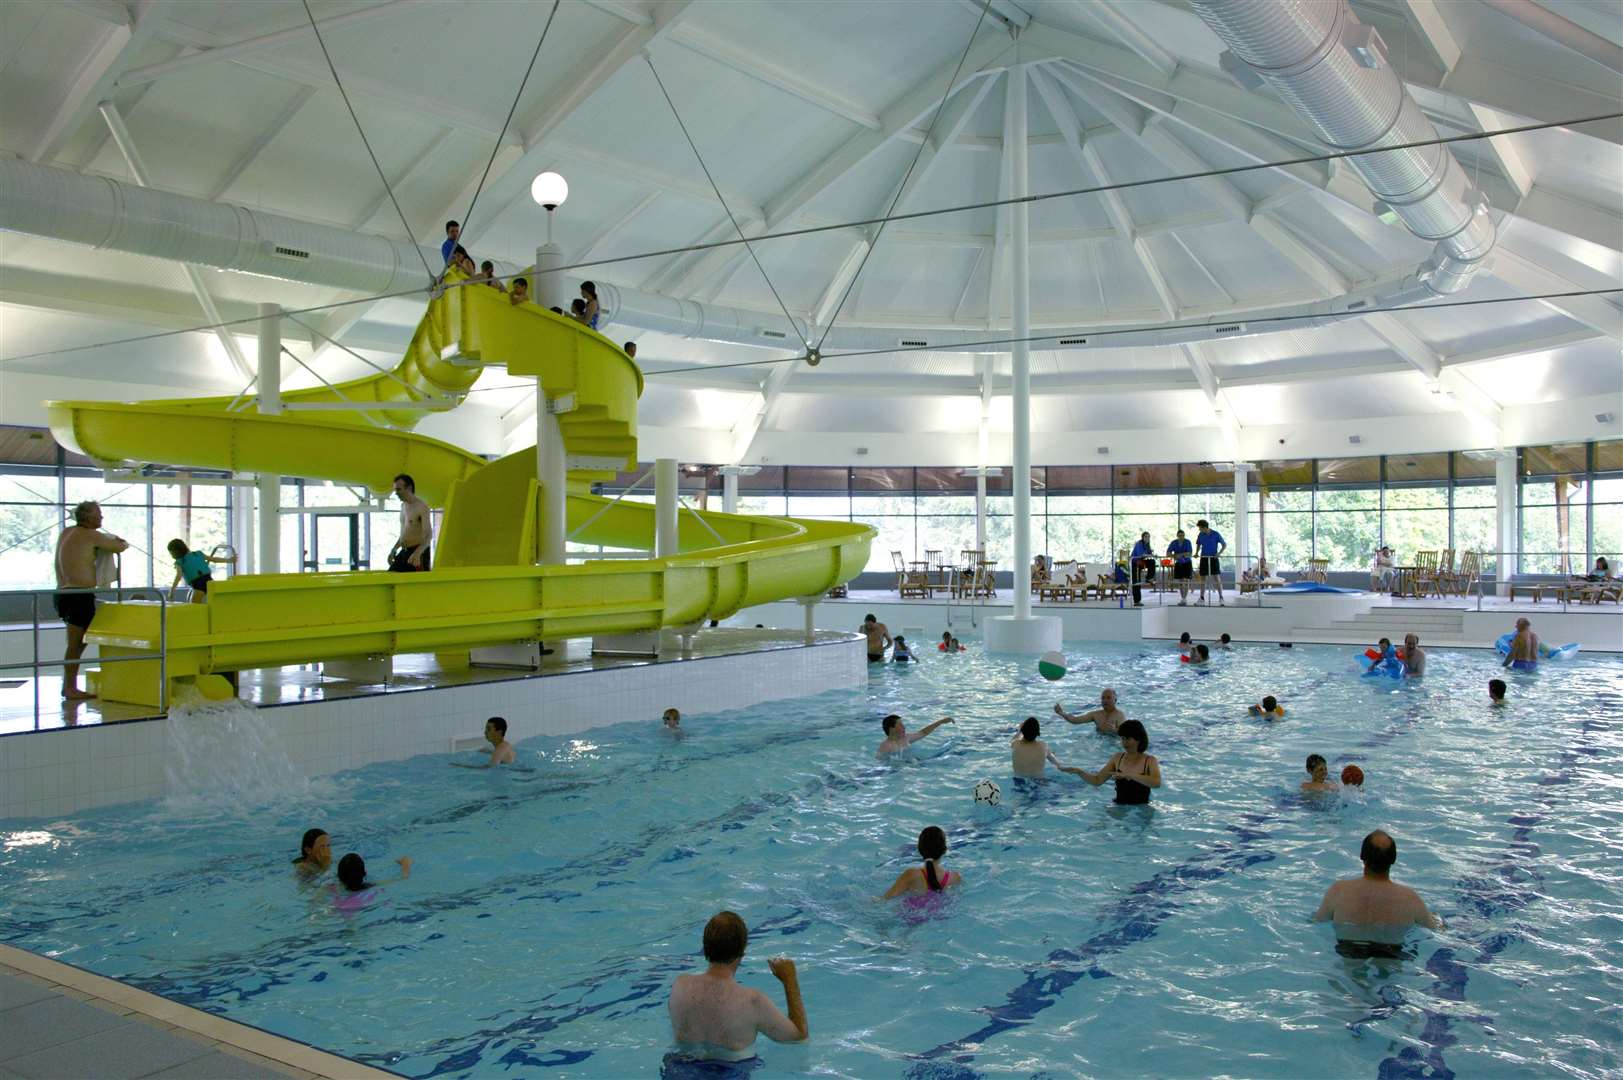 MacDonald Aviemore Resort Pool Complex